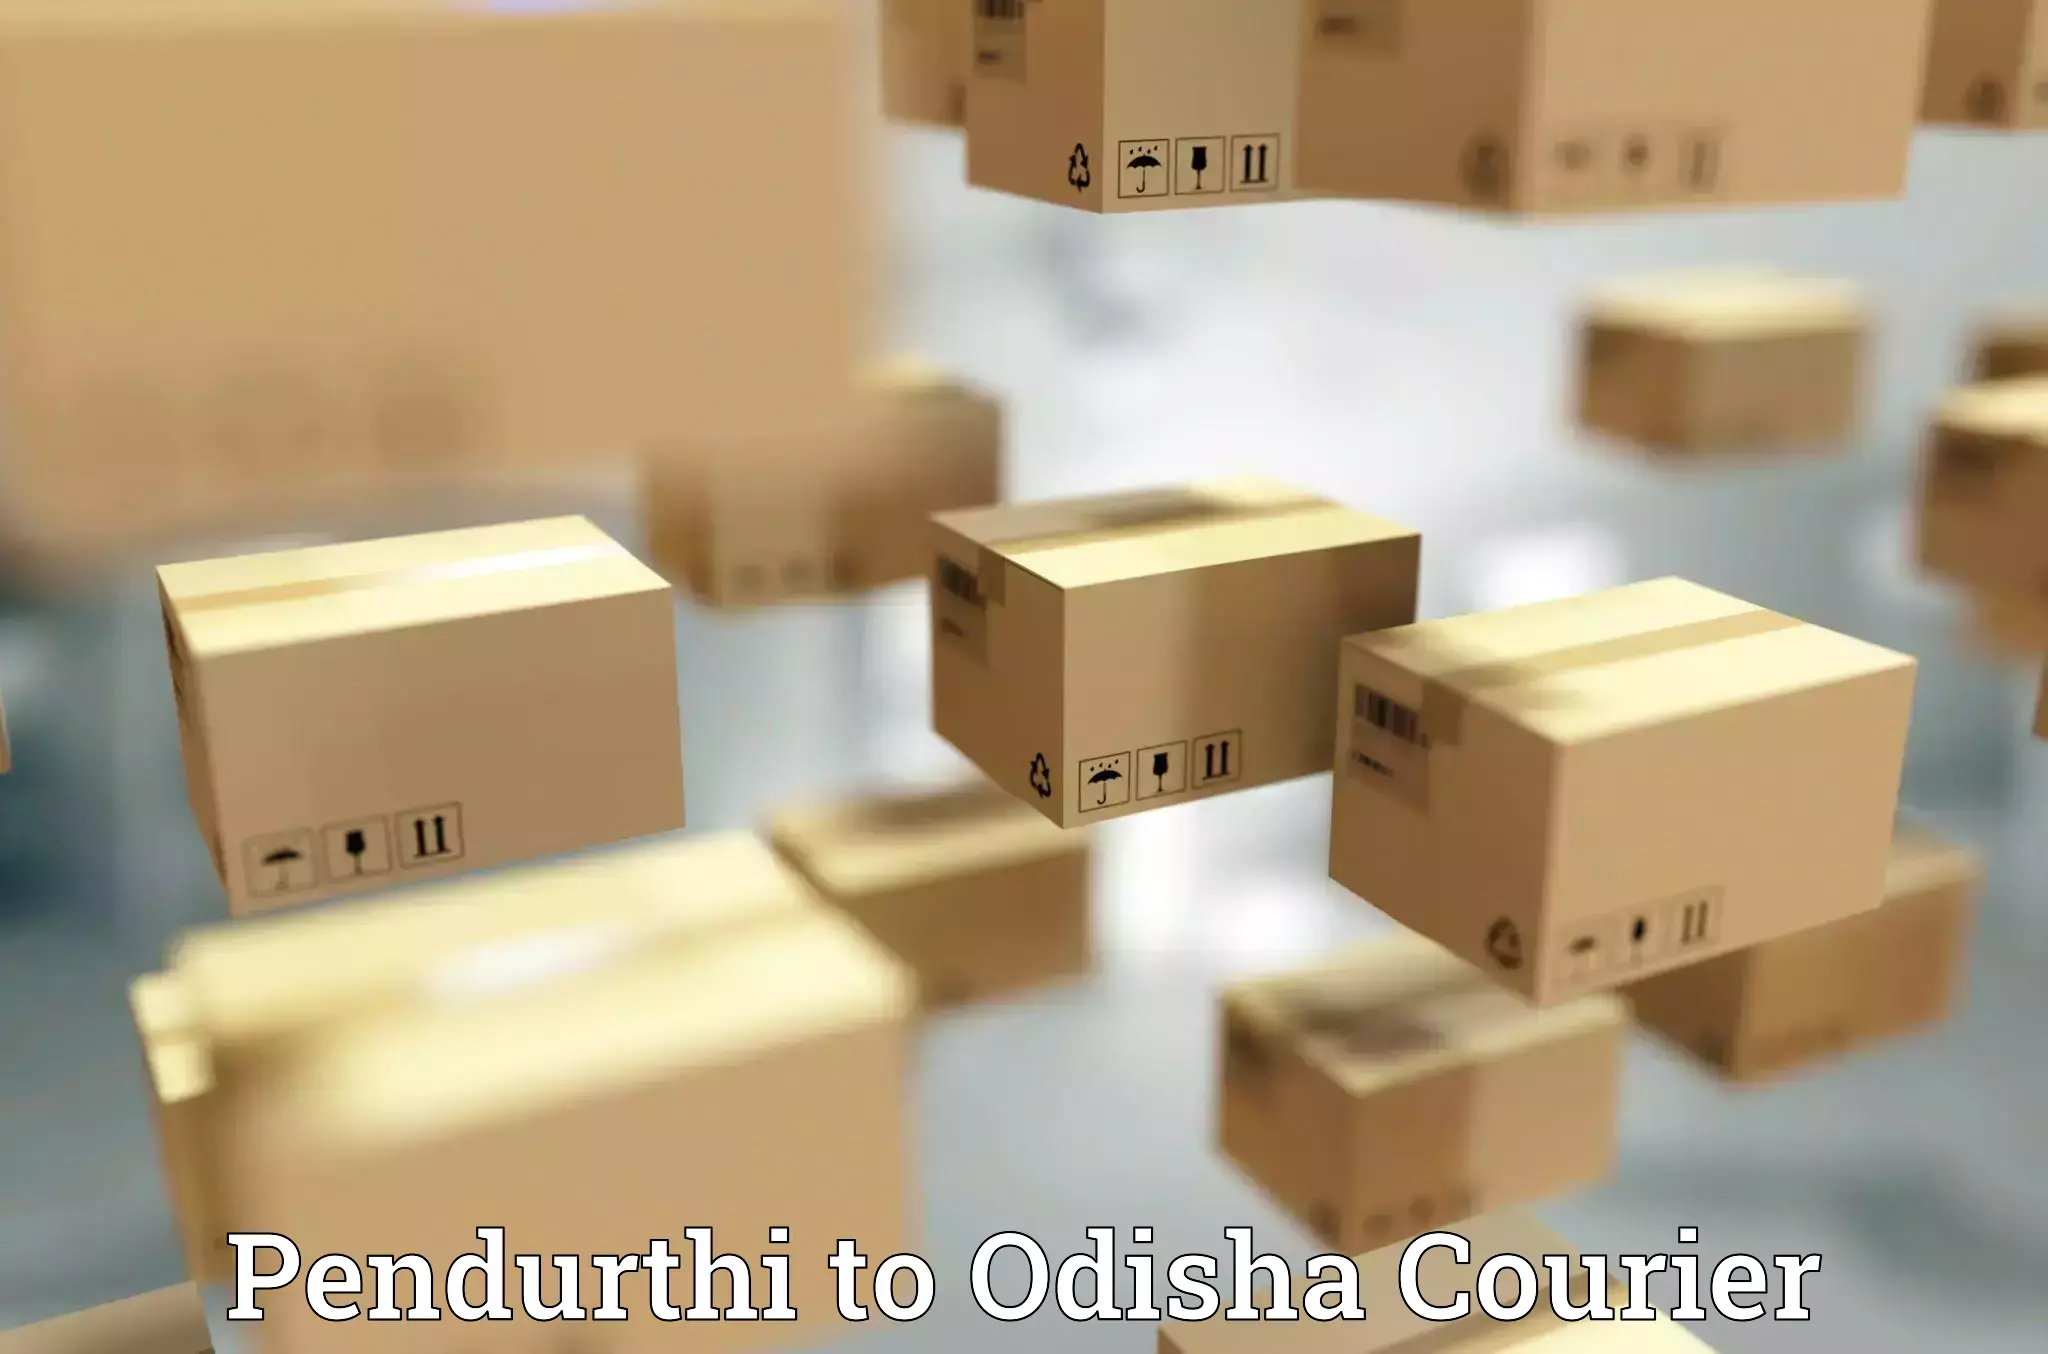 Flexible courier rates Pendurthi to Gajapati